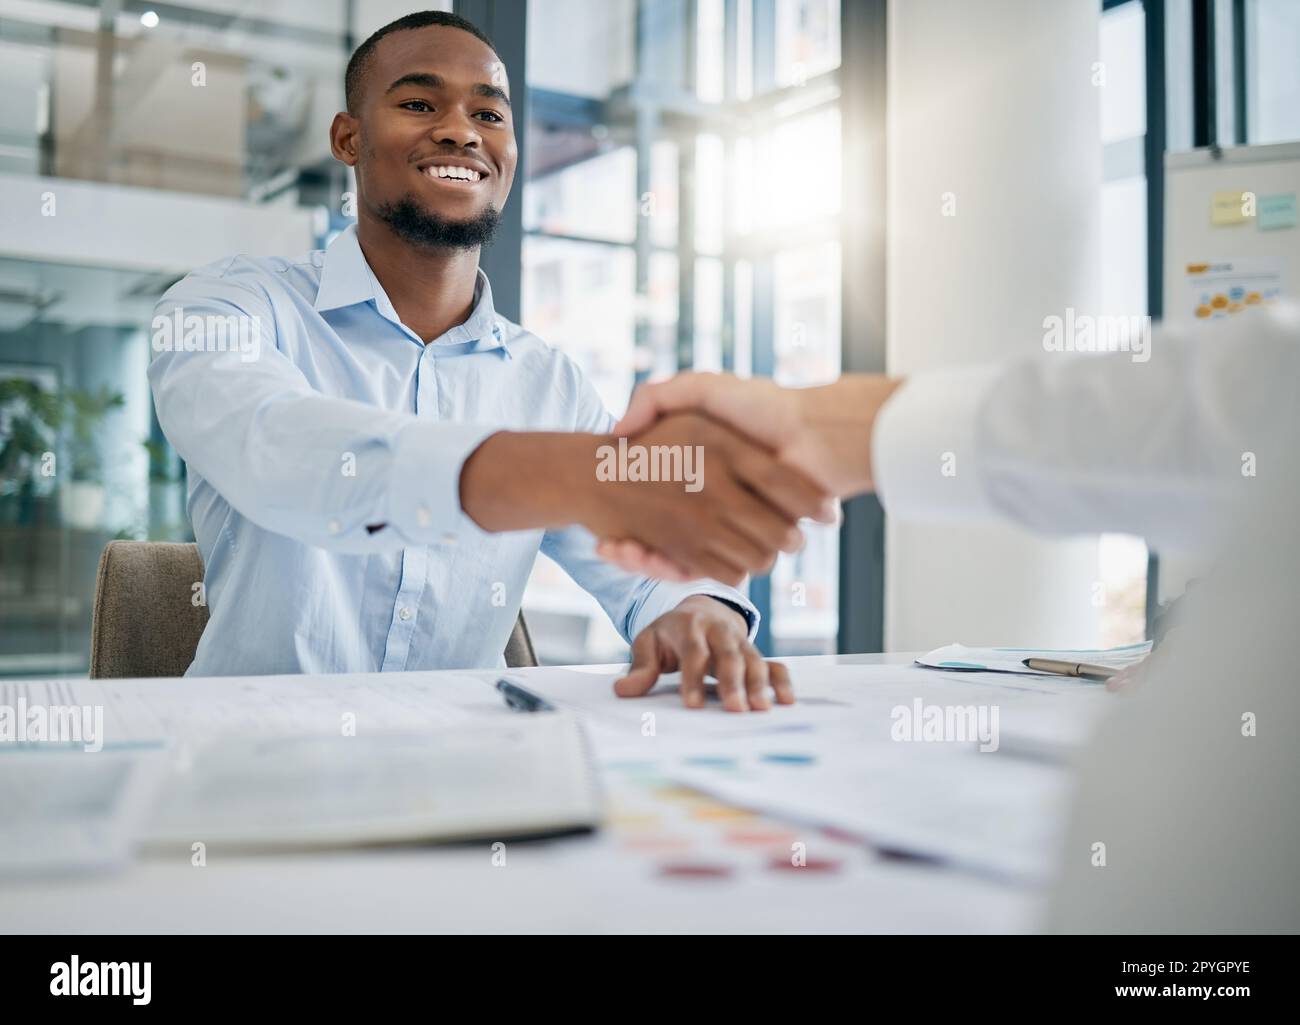 Einstellung, Designer oder schwarzer Mann, der dem Personalmanager die Hand schüttelt, um ein erfolgreiches Vorstellungsgespräch im Büro zu führen. Händeschütteln, Treffen oder Mitarbeiter mit einem fröhlichen Lächeln für eine Beförderung oder ein Geschäft Stockfoto